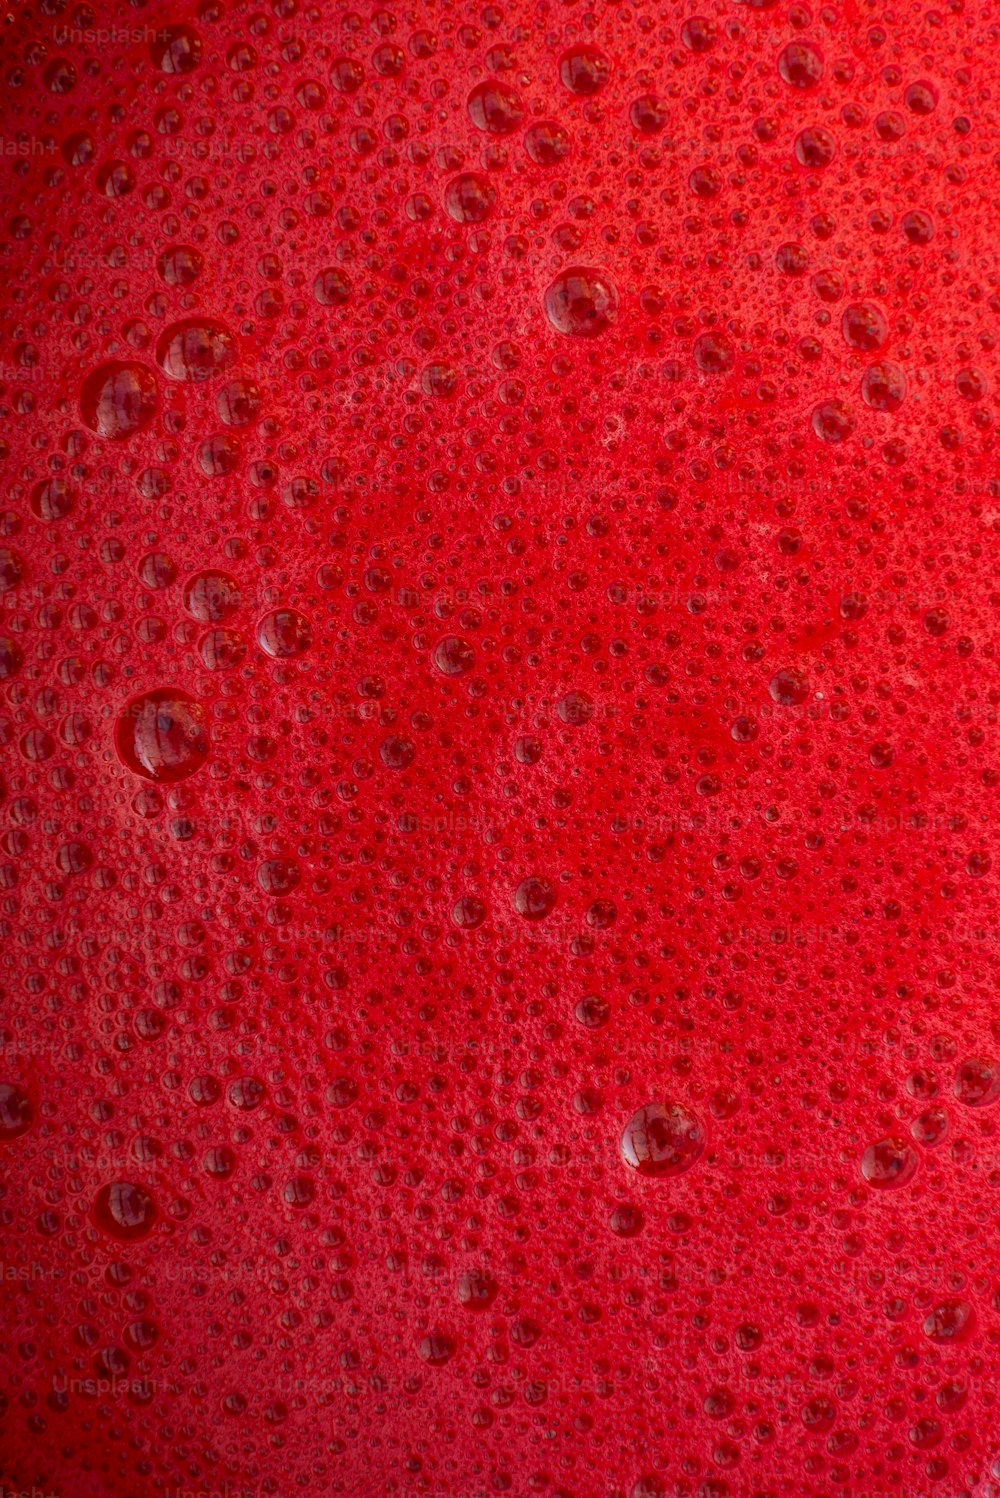 un primer plano de una sustancia roja con gotas de agua